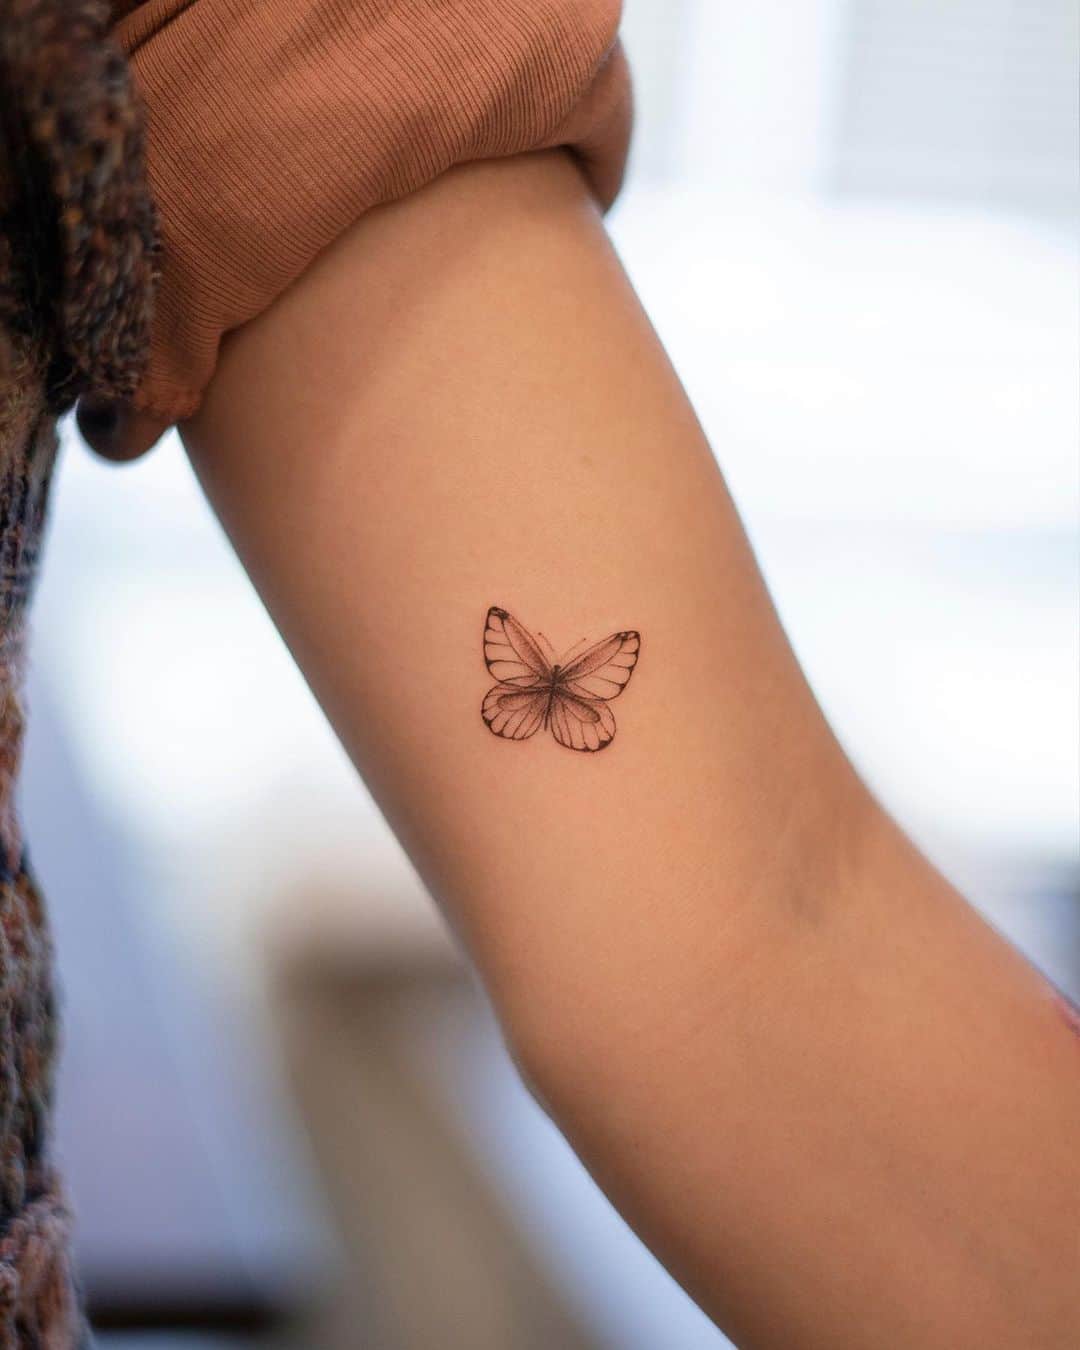 Cute butterfly tattoo by handitrip